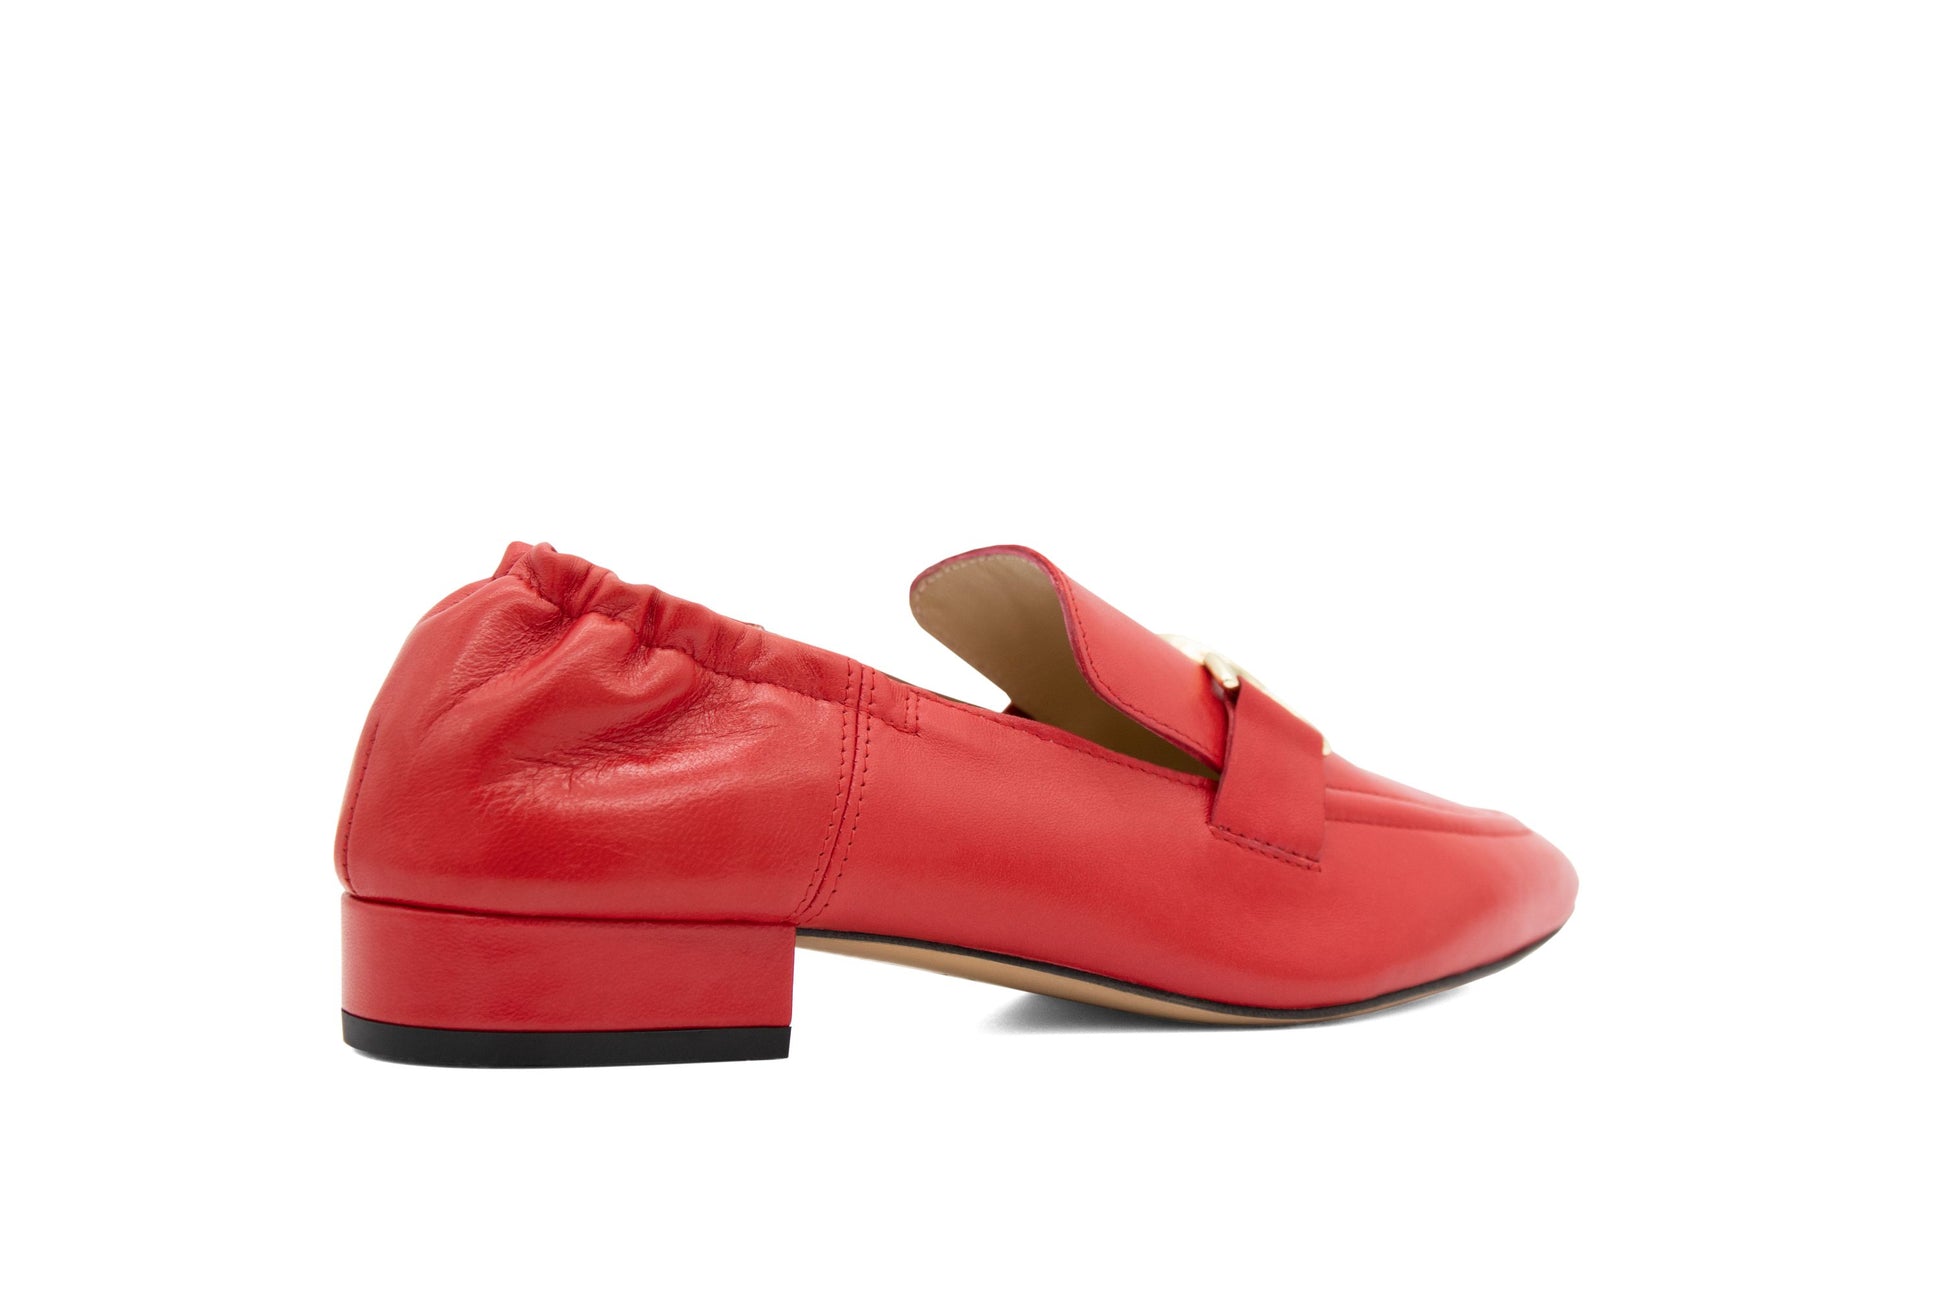 #color_ Red | Cavalinho Pointed Toe Flats - Red - 48100595.04_3_941b7b7d-2e2a-4c3c-8a2d-8cd48676d76e